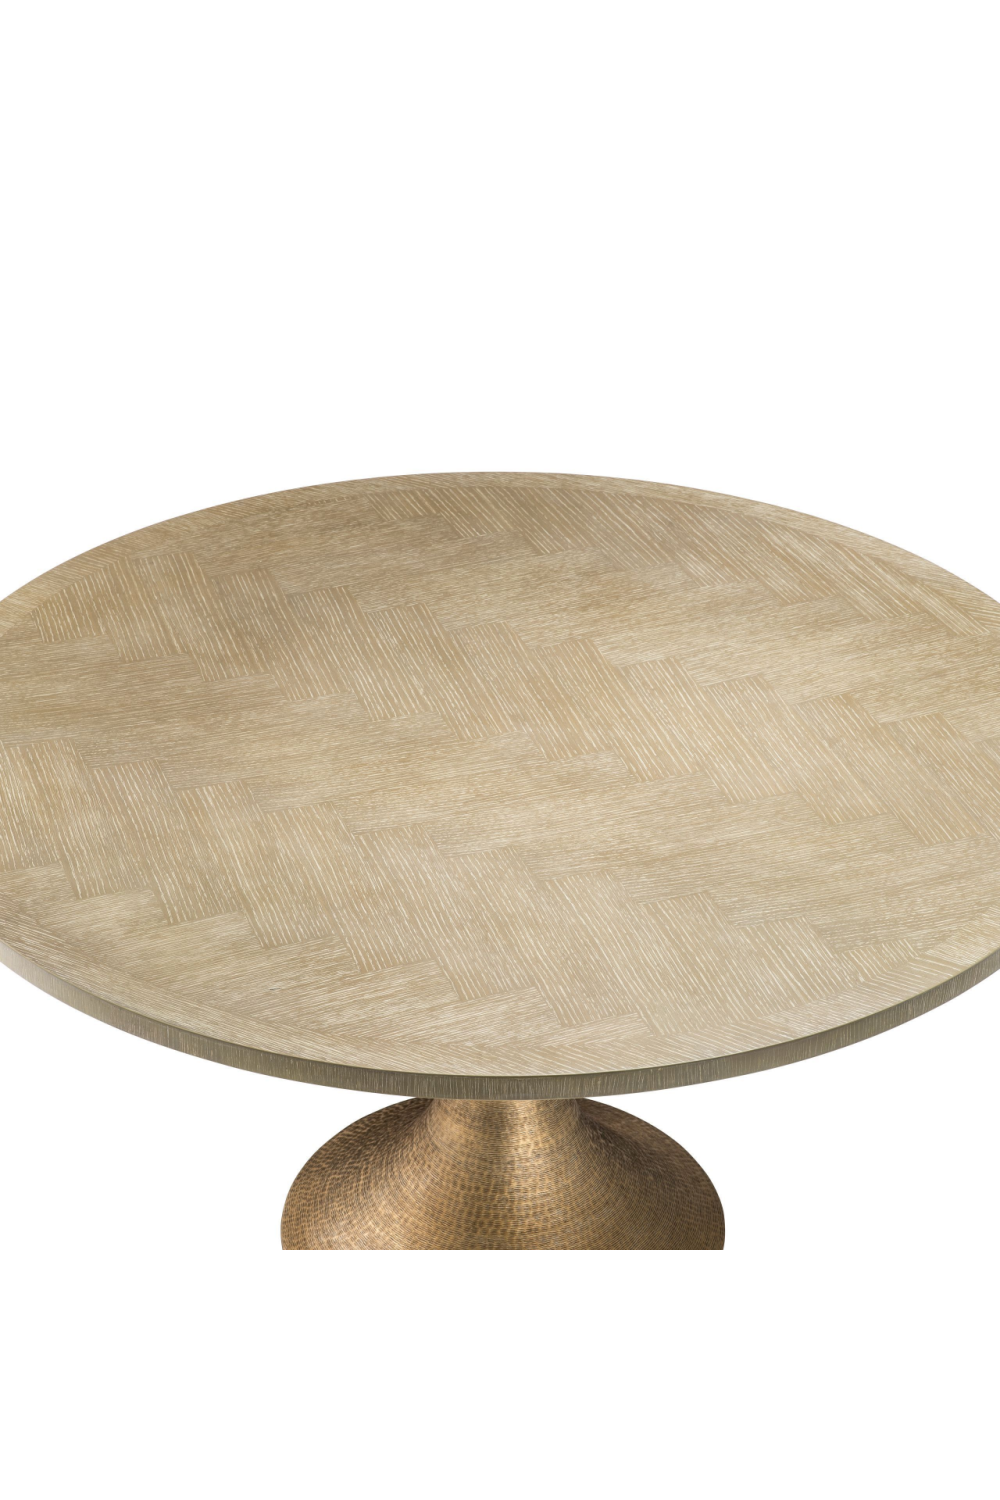 Round Oak Dining Table | Eichholtz Melchior | OROA TRADE